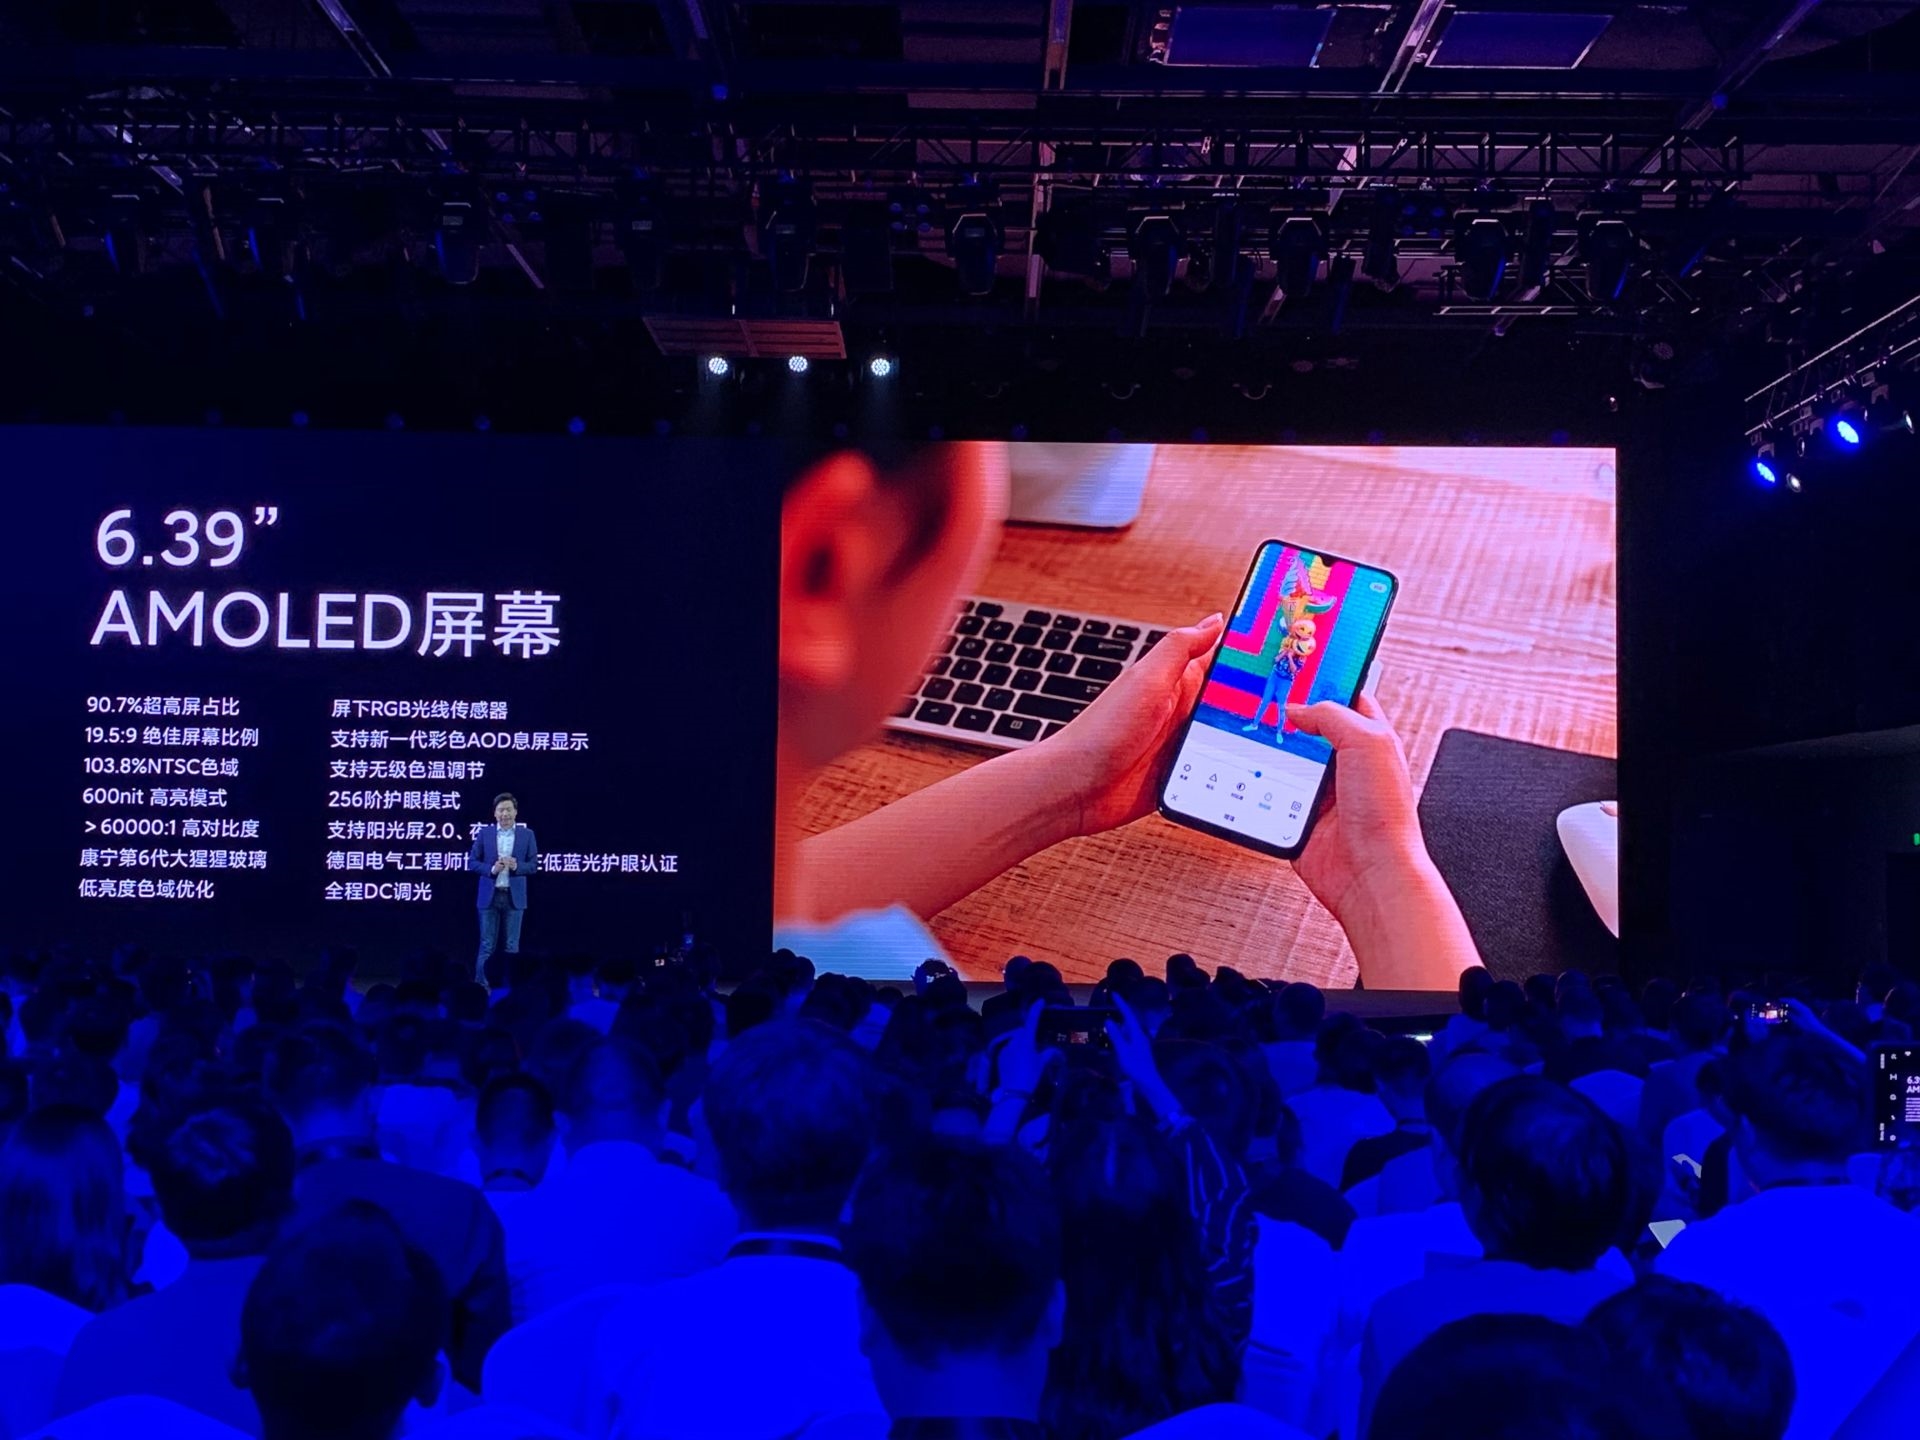 Xiaomi Mi 9 Pro 5G chính thức trình làng khiến người dùng công nghệ phấn khíc